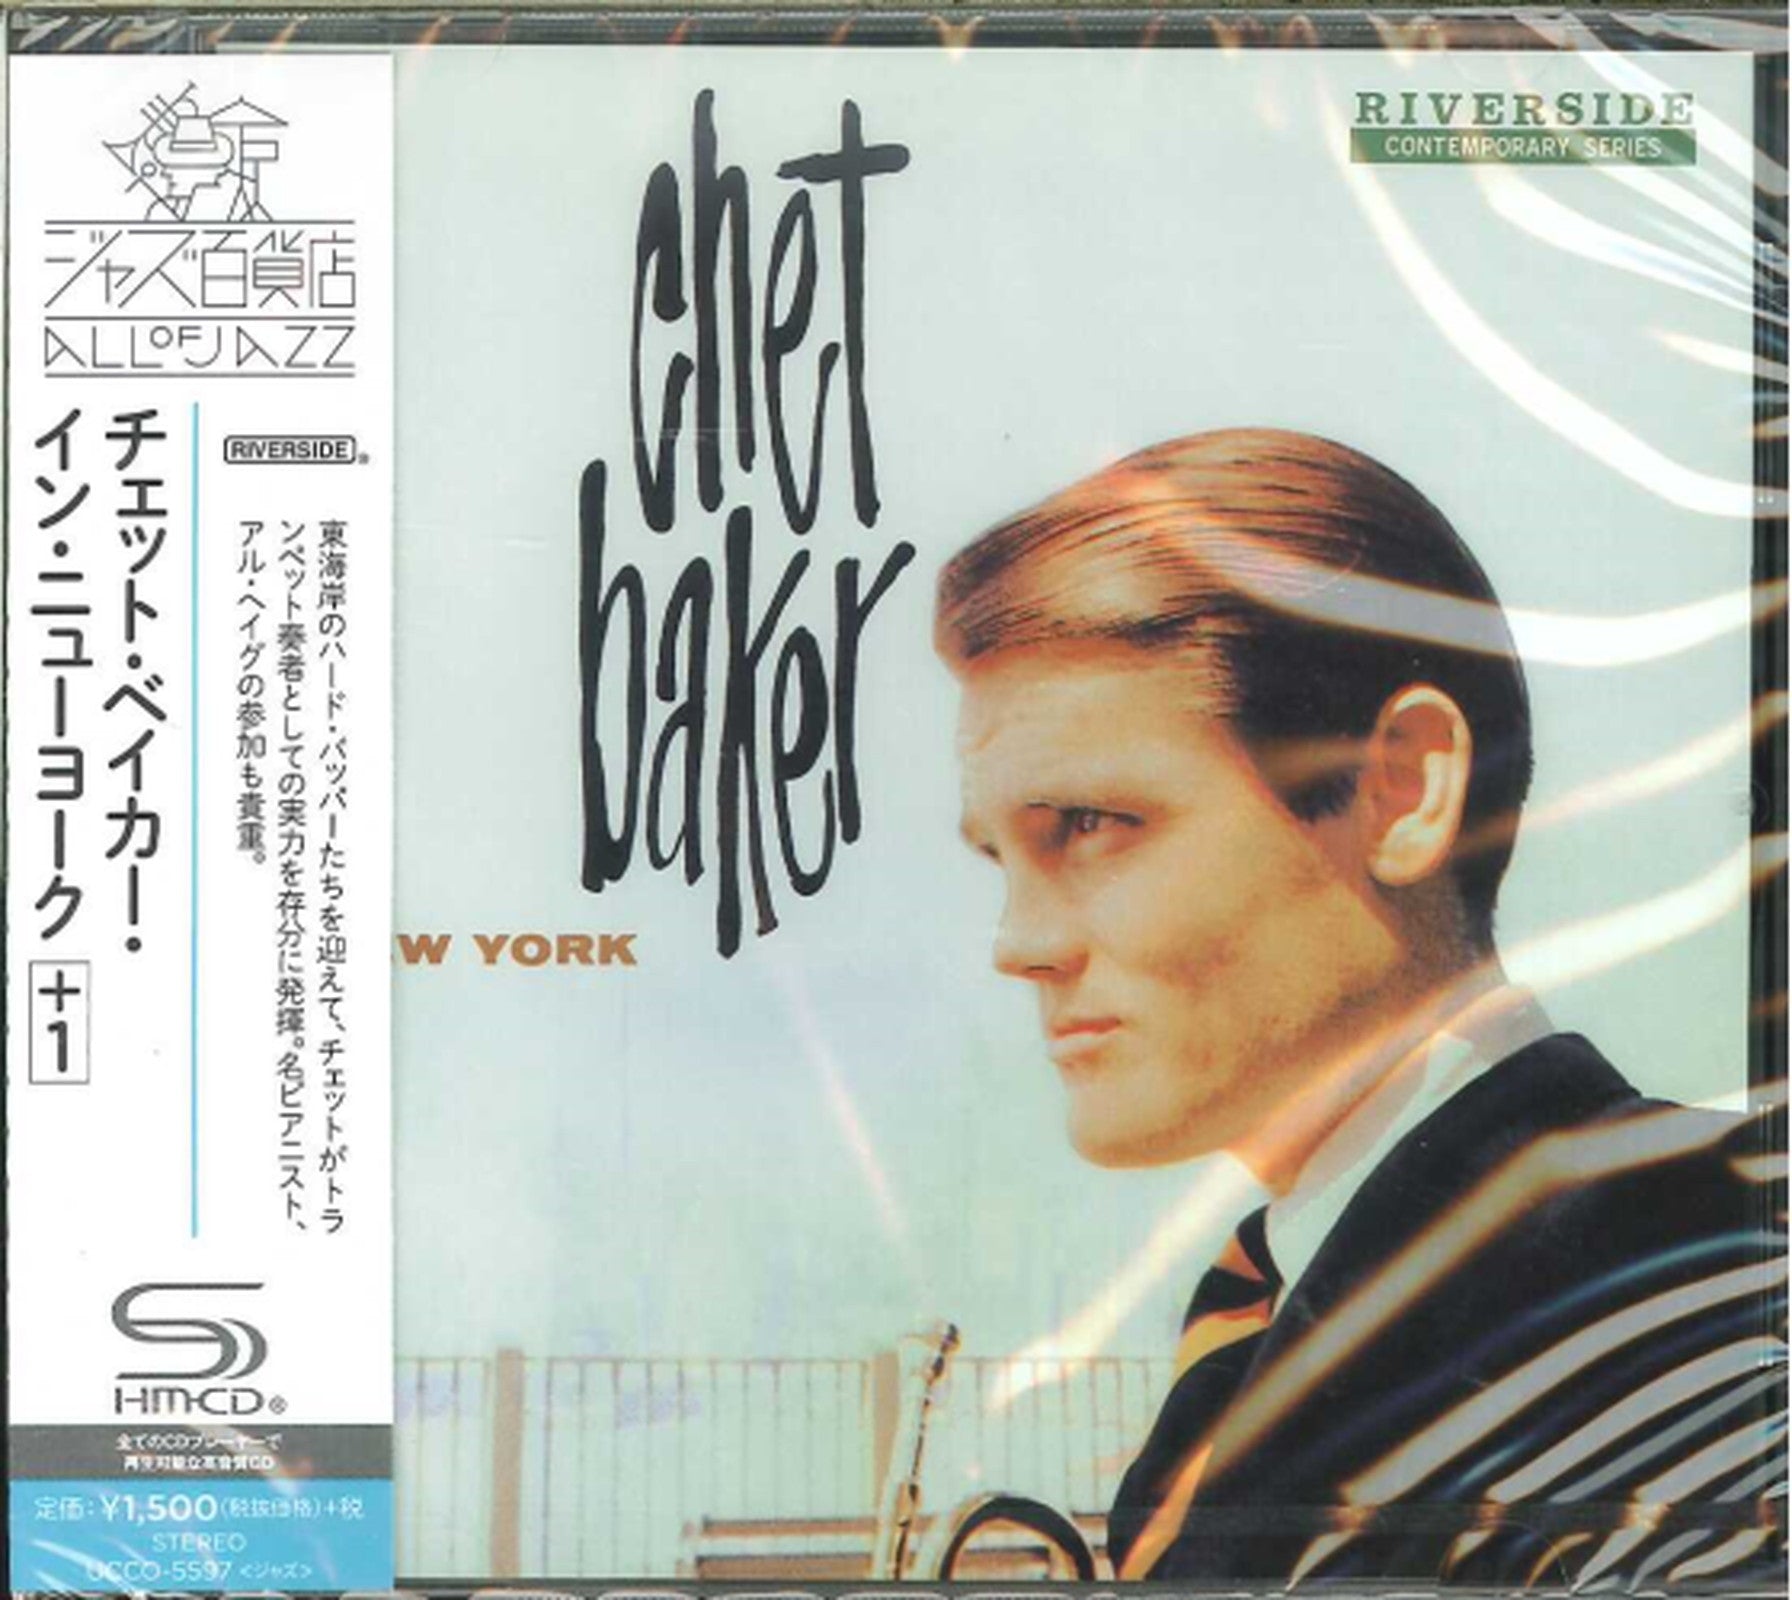 Chet Baker - Chet Baker In New York - Japan SHM-CD Bonus Track – CDs Vinyl  Japan Store